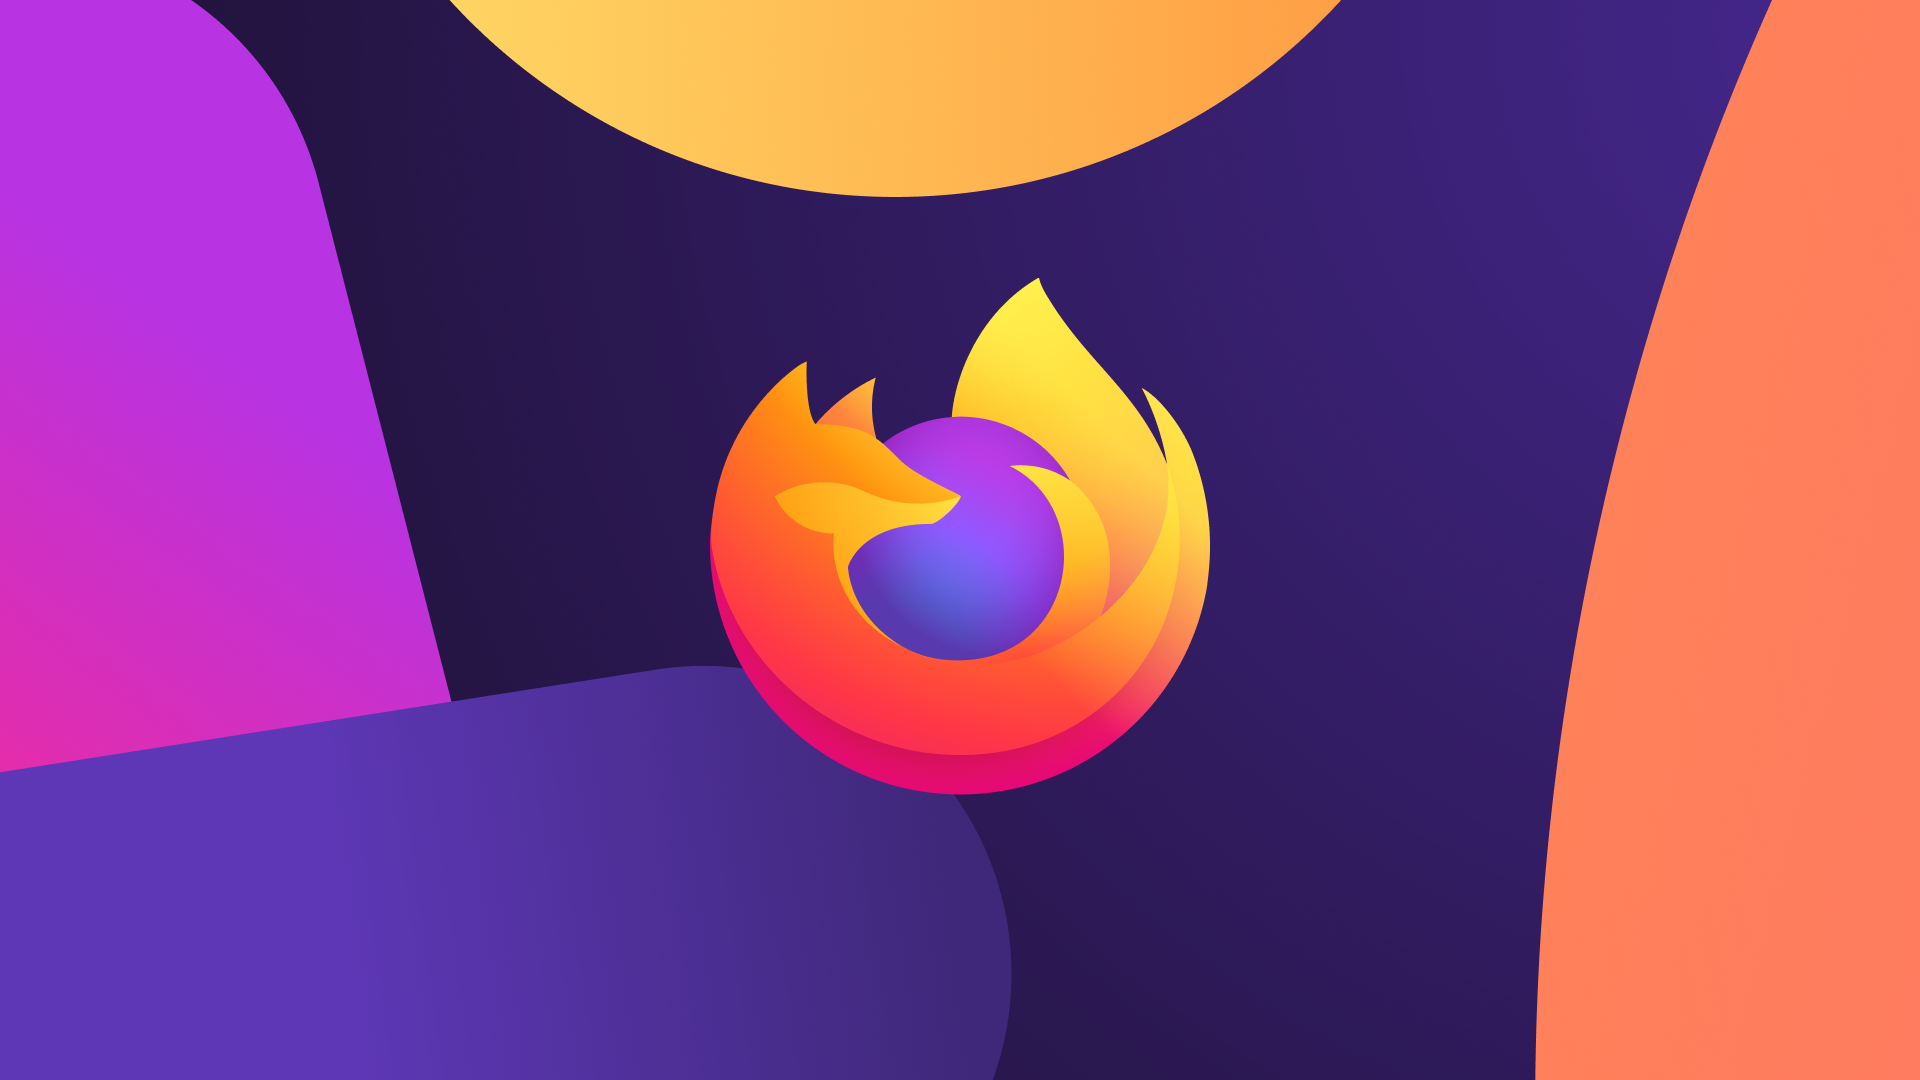 Firefox 94 Colorways Themes cung cấp công cụ tốt nhất để bạn thể hiện cá tính của mình. Hình ảnh liên quan đến Colorways Themes sẽ cho bạn cái nhìn tổng quan về các tùy chọn thiết kế và màu sắc cho trình duyệt. Bất kỳ ai muốn tạo ra giao diện độc nhất vô nhị cho trình duyệt của họ đều không nên bỏ lỡ cơ hội này.